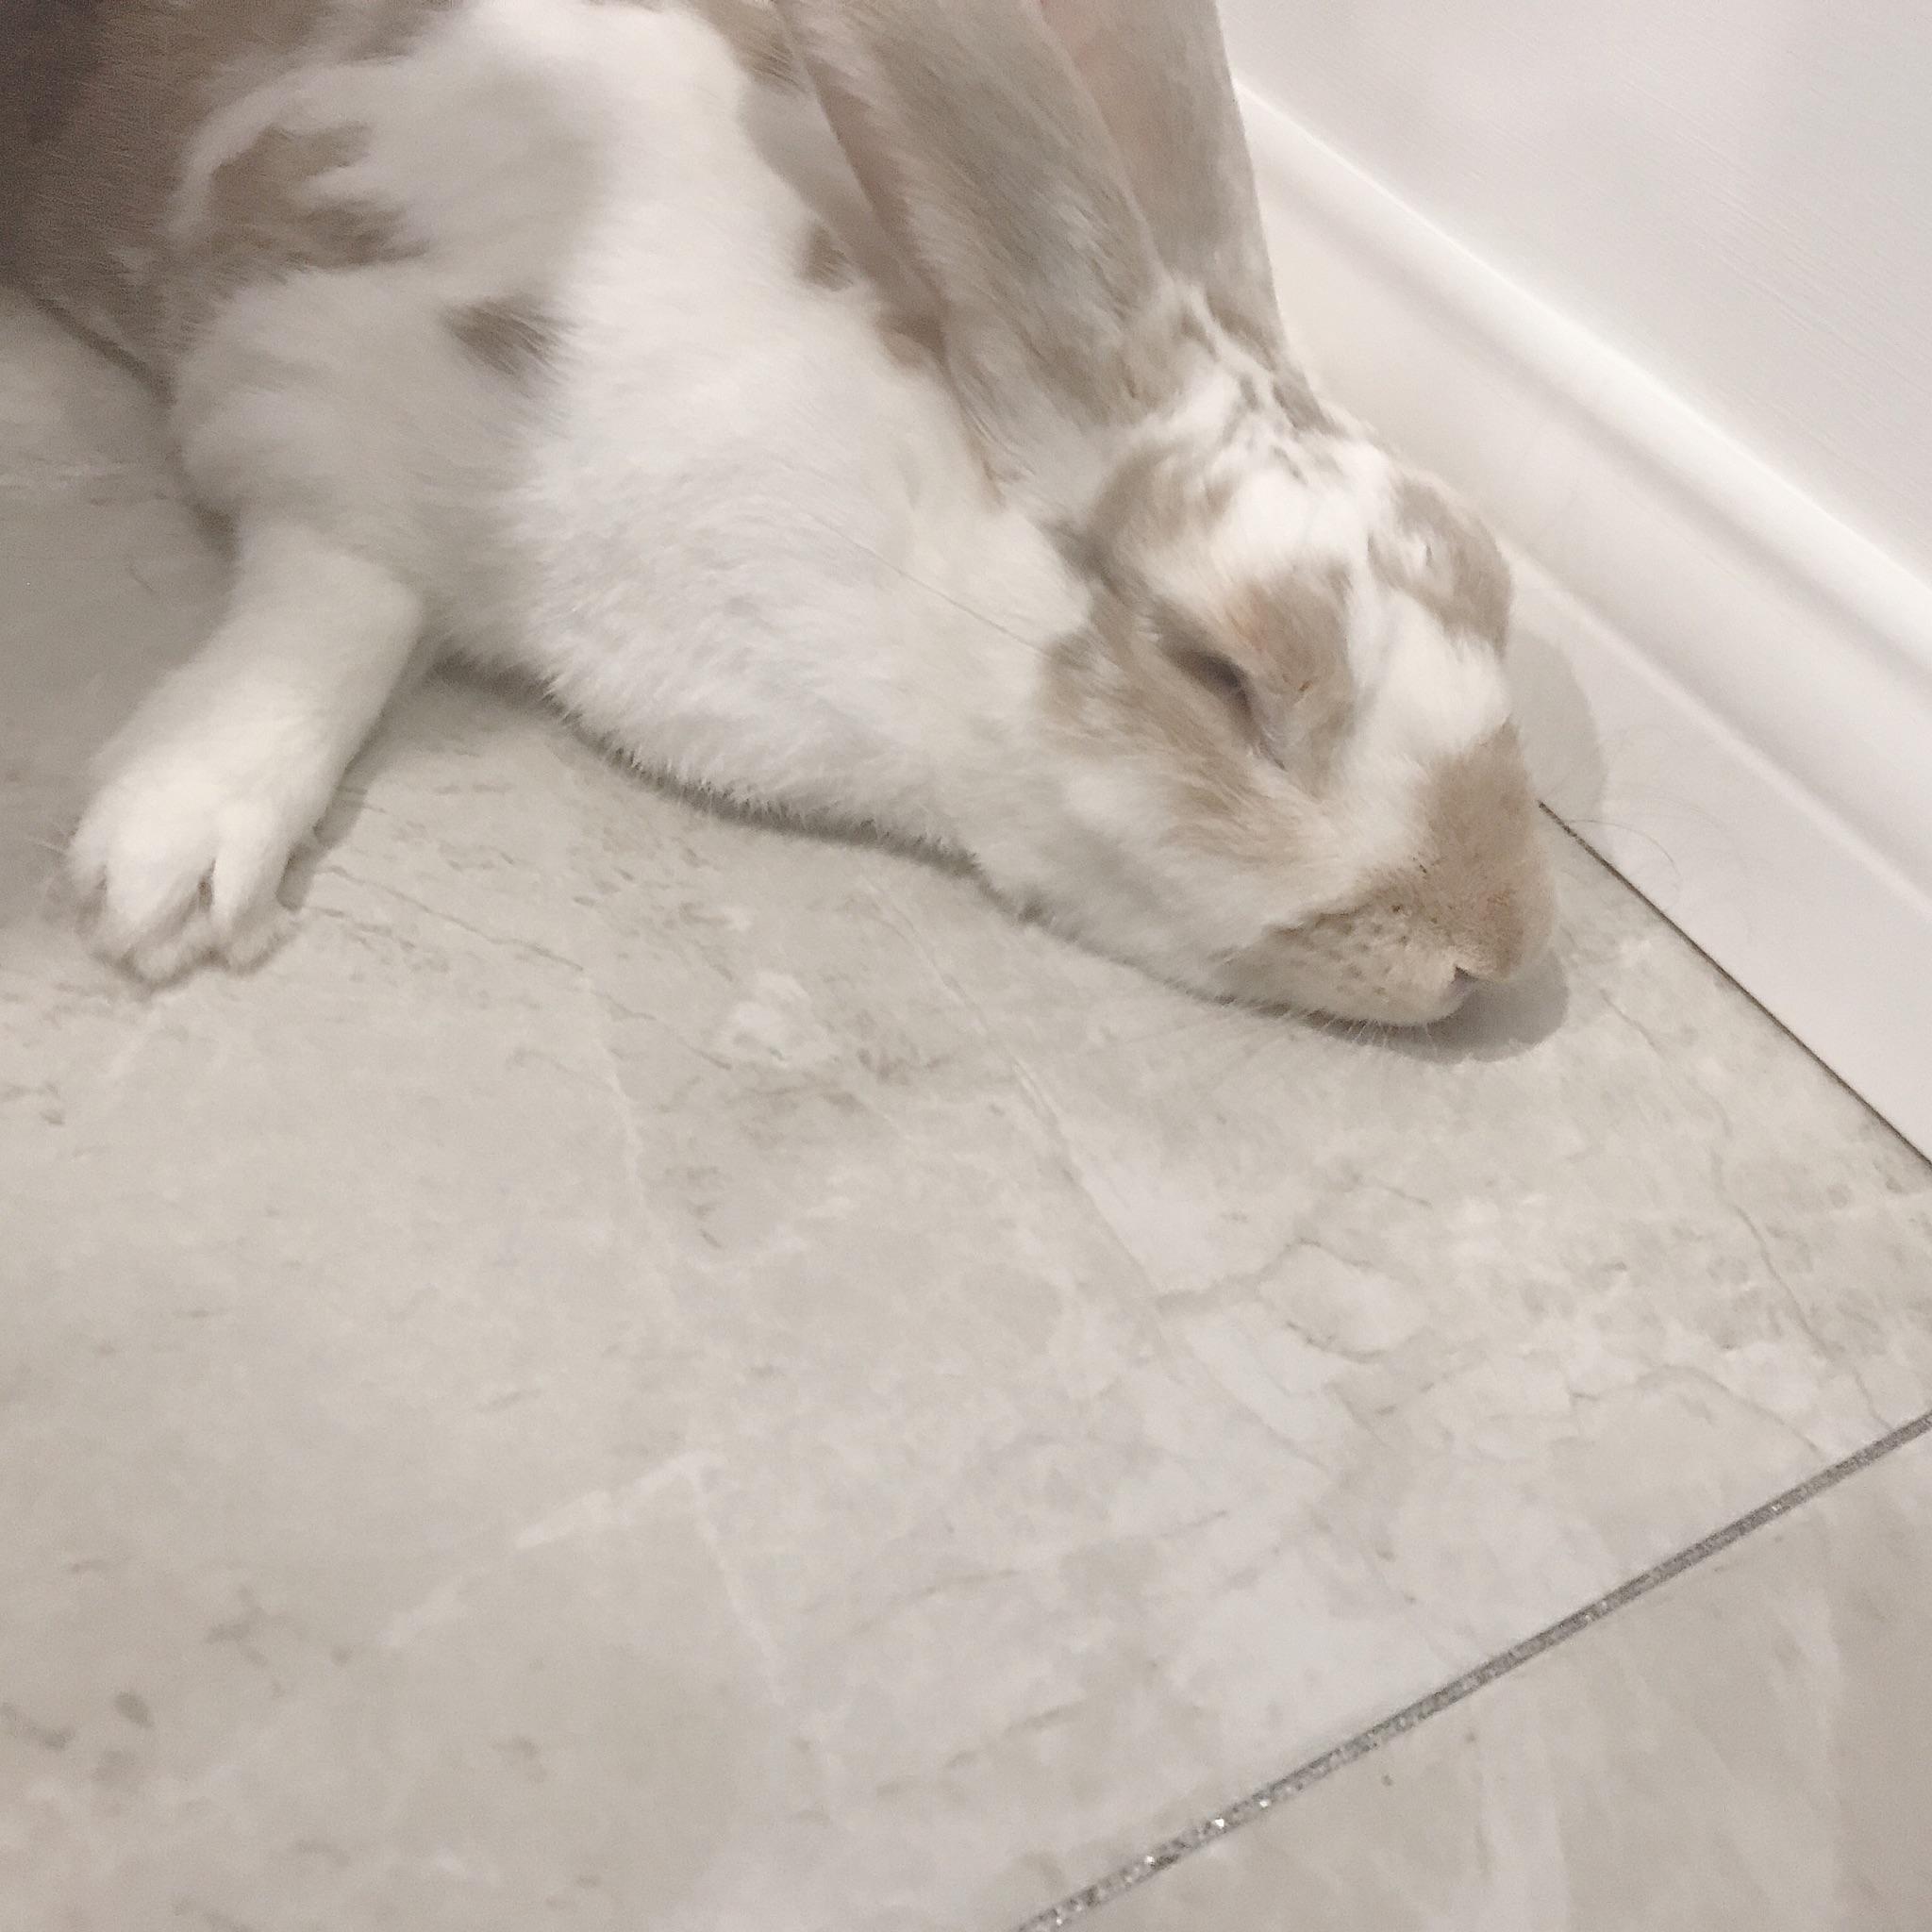 请问一下兔兔睡觉的姿势是什么样子的